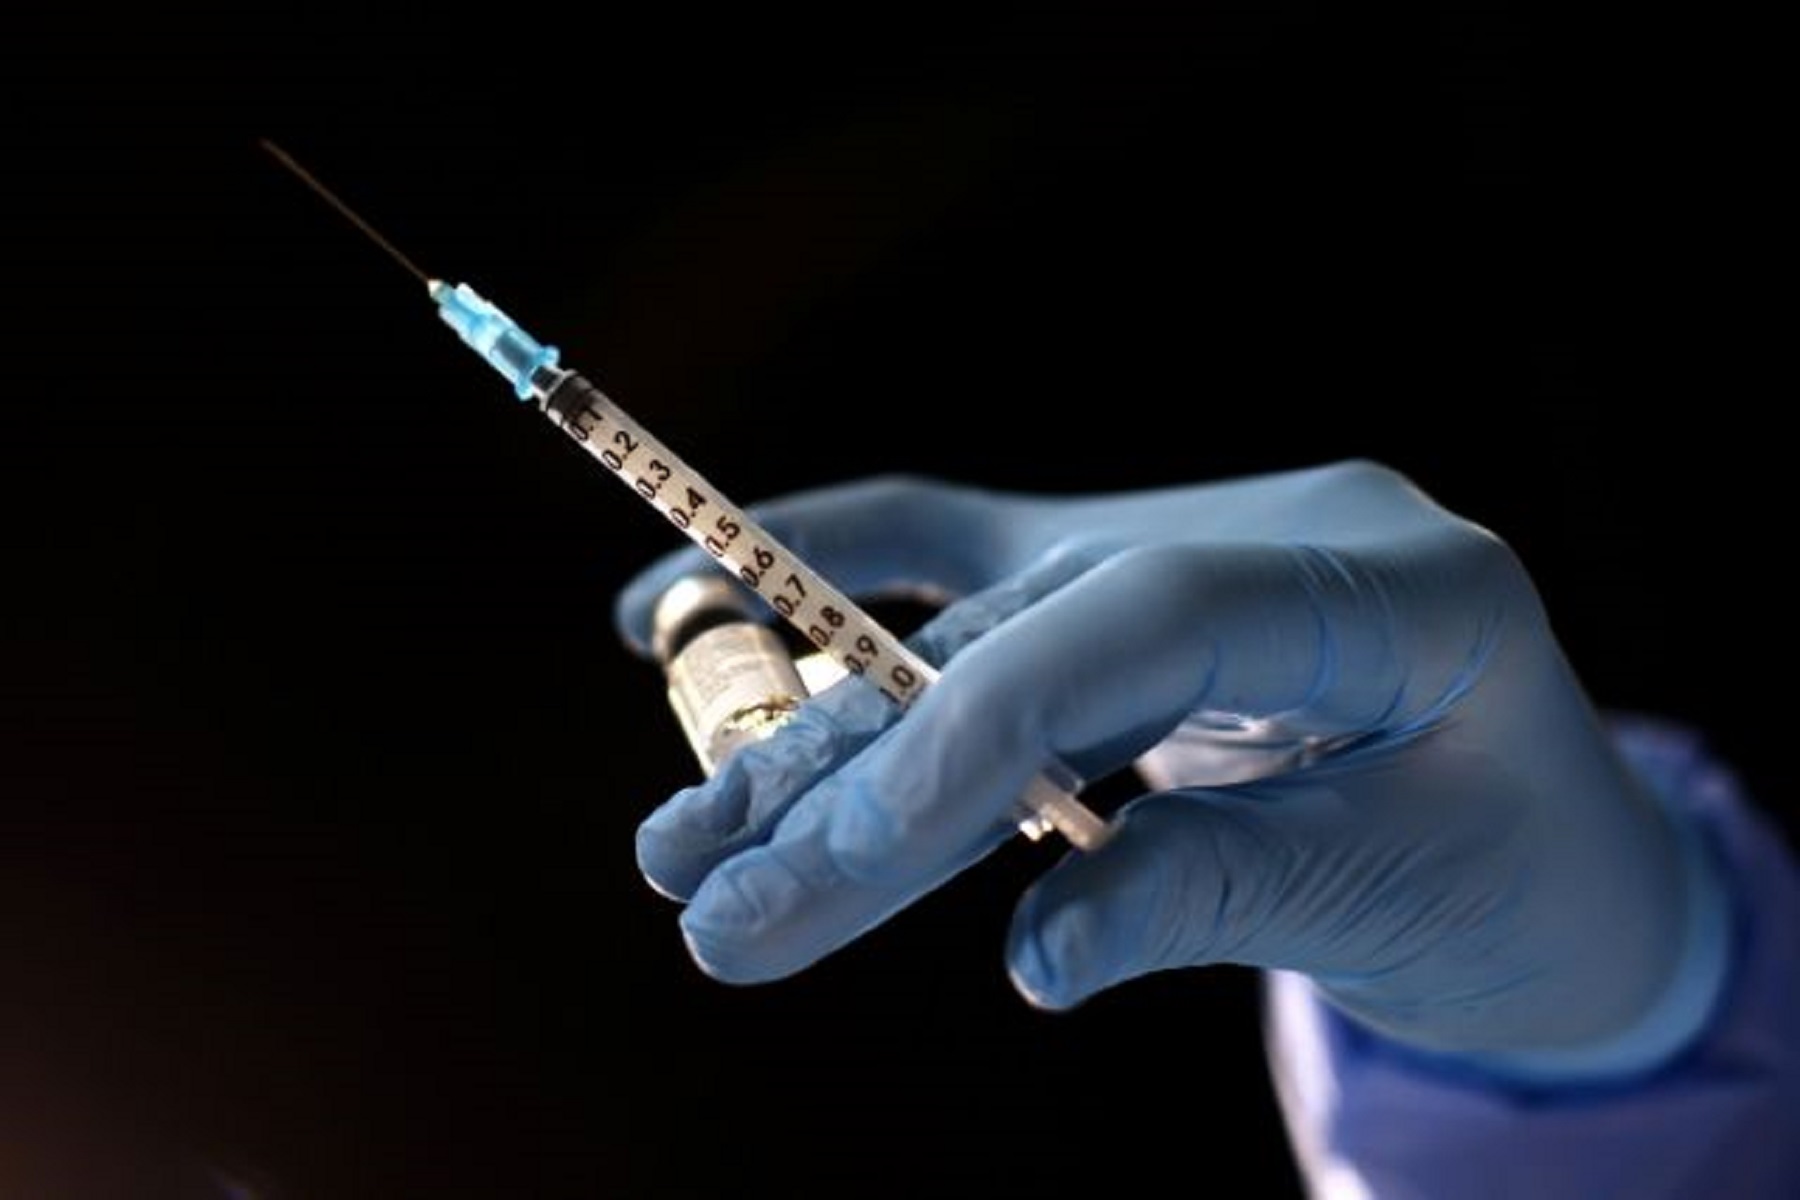 Εμβόλιο Κορωνοϊός: Αποκάλυψη MEGA – Πώς έκλεισαν εκατοντάδες ραντεβού για εμβολιασμό εκτός σειράς σε υγιείς εργαζόμενους βιομηχανίας [vid]